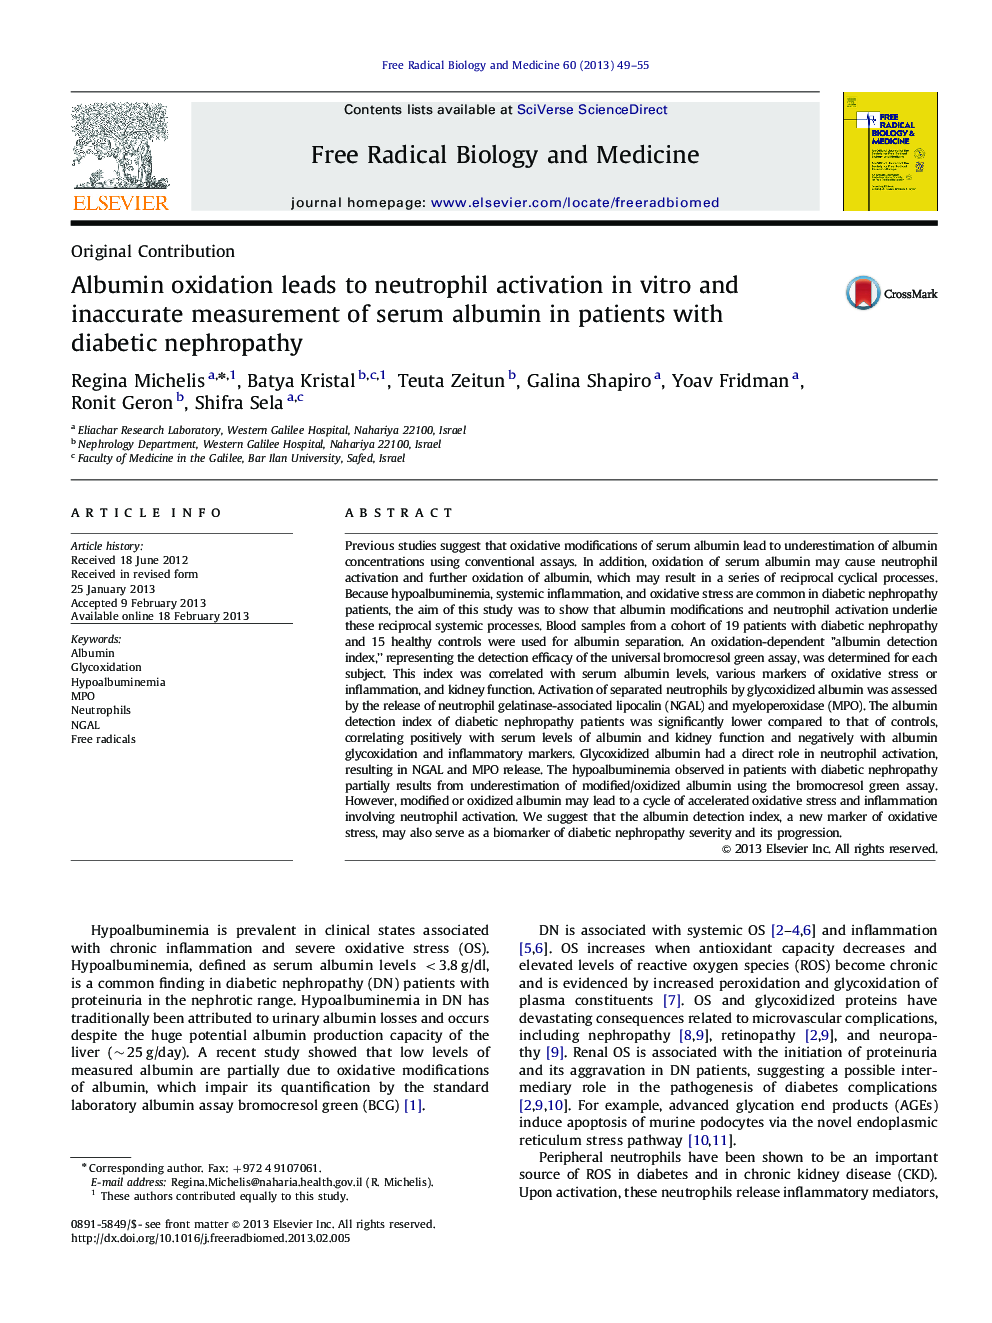 اکسیداسیون آلبومین منجر به فعال سازی نوتروفیل در آزمایشگاهی و اندازه گیری نادرست آلبومین سرم در بیماران مبتلا به نفروپاتی دیابتی می شود 